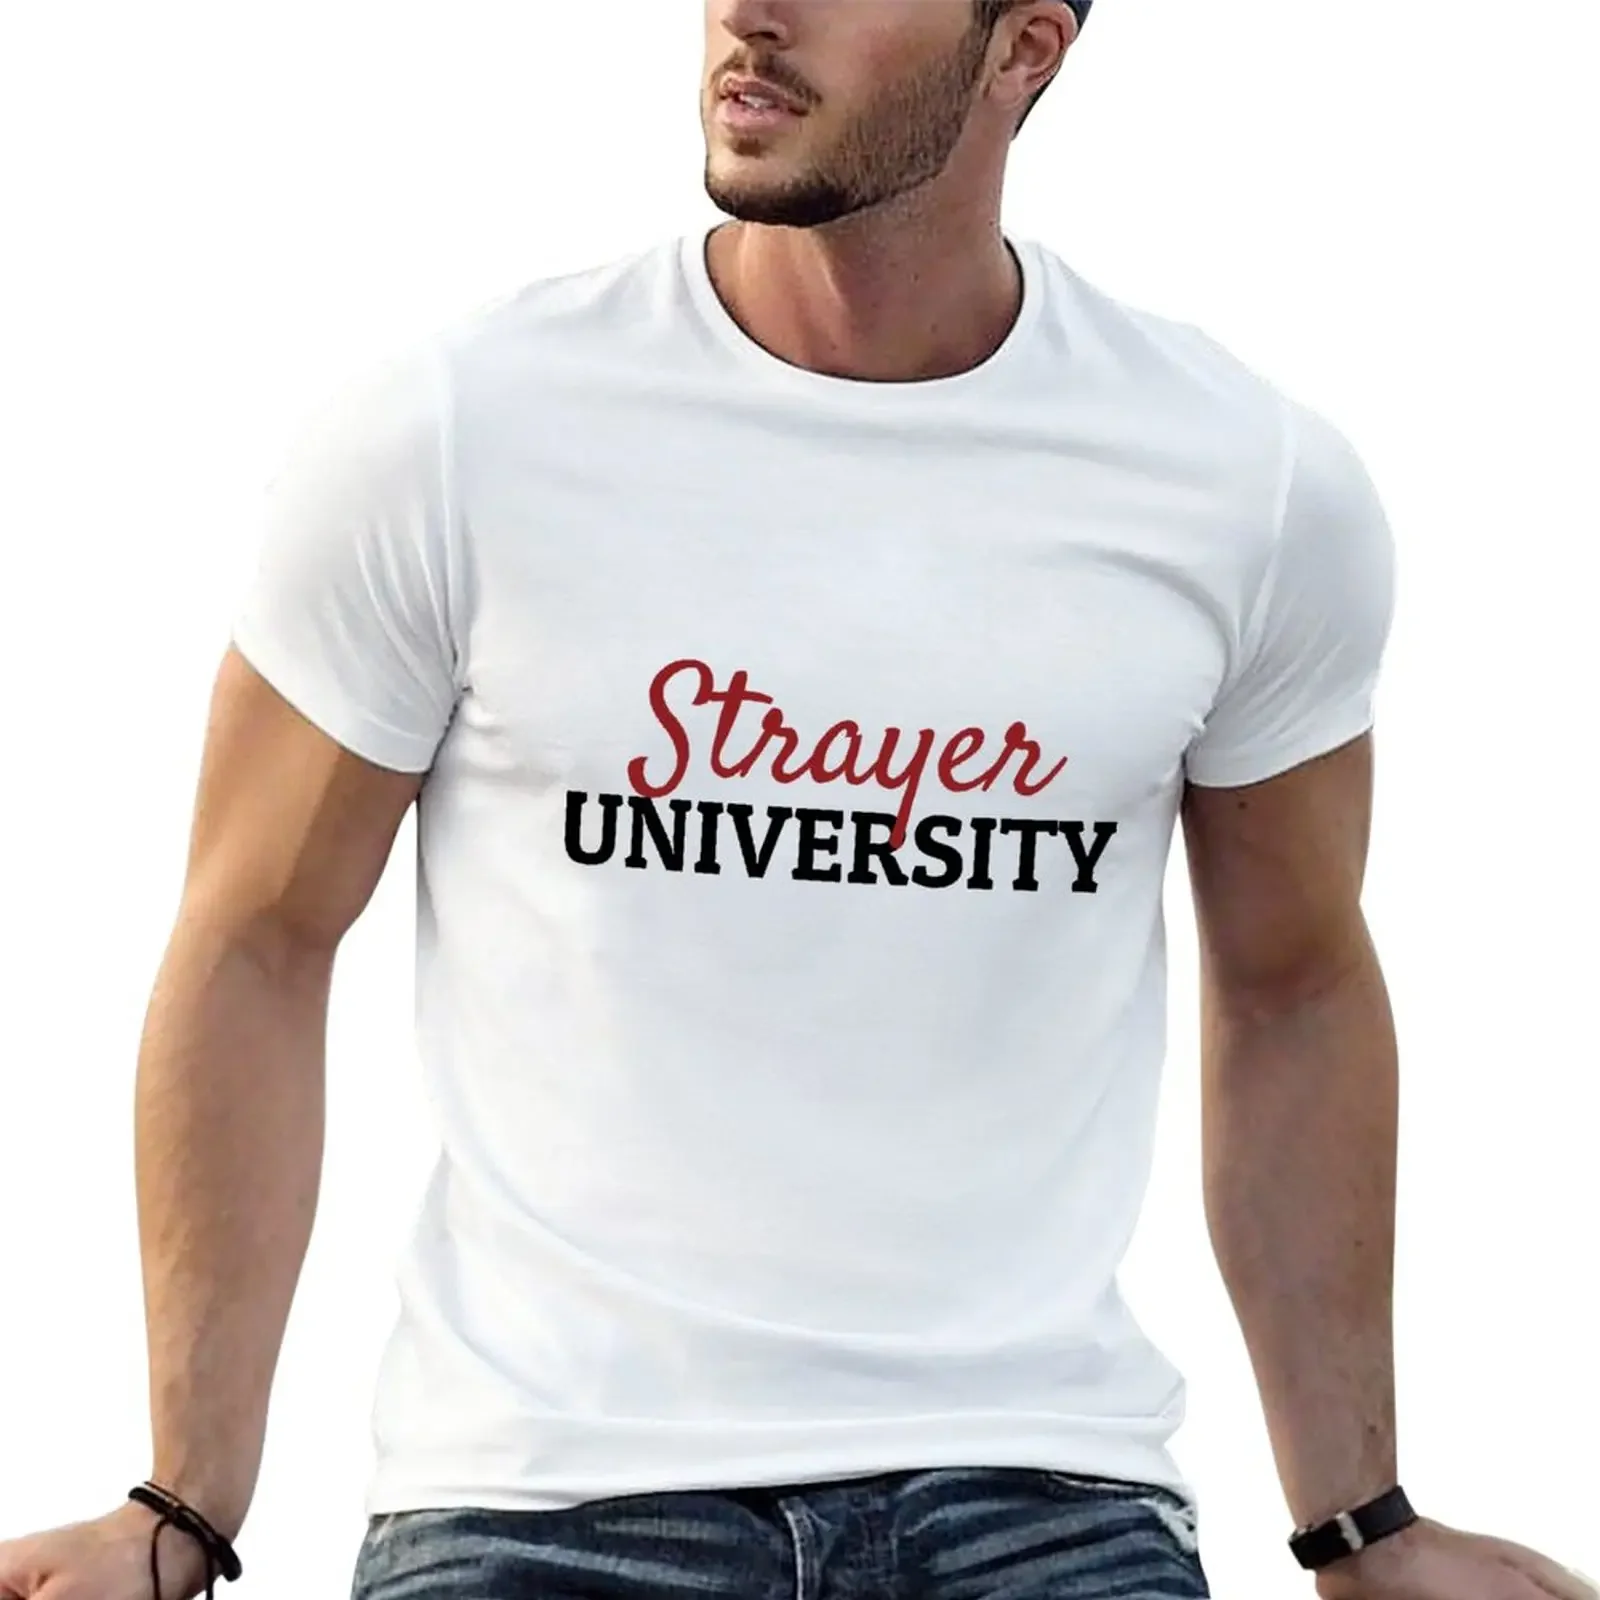 

Футболка Strayer для университета корейская мода черные мужские футболки для чемпиона новое издание